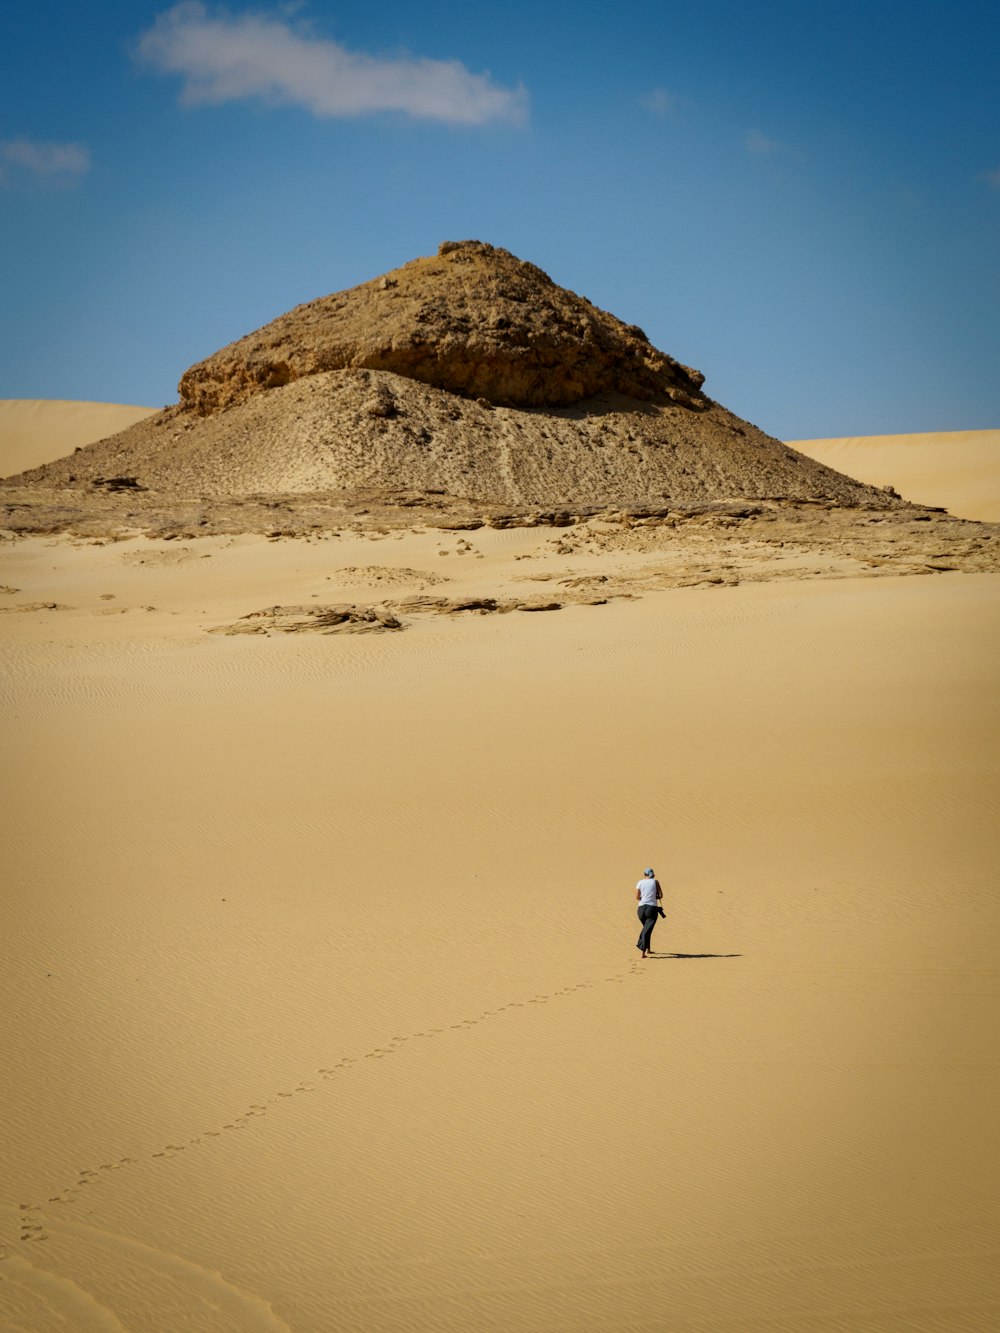 man in white shirt walking on brown sand during daytime